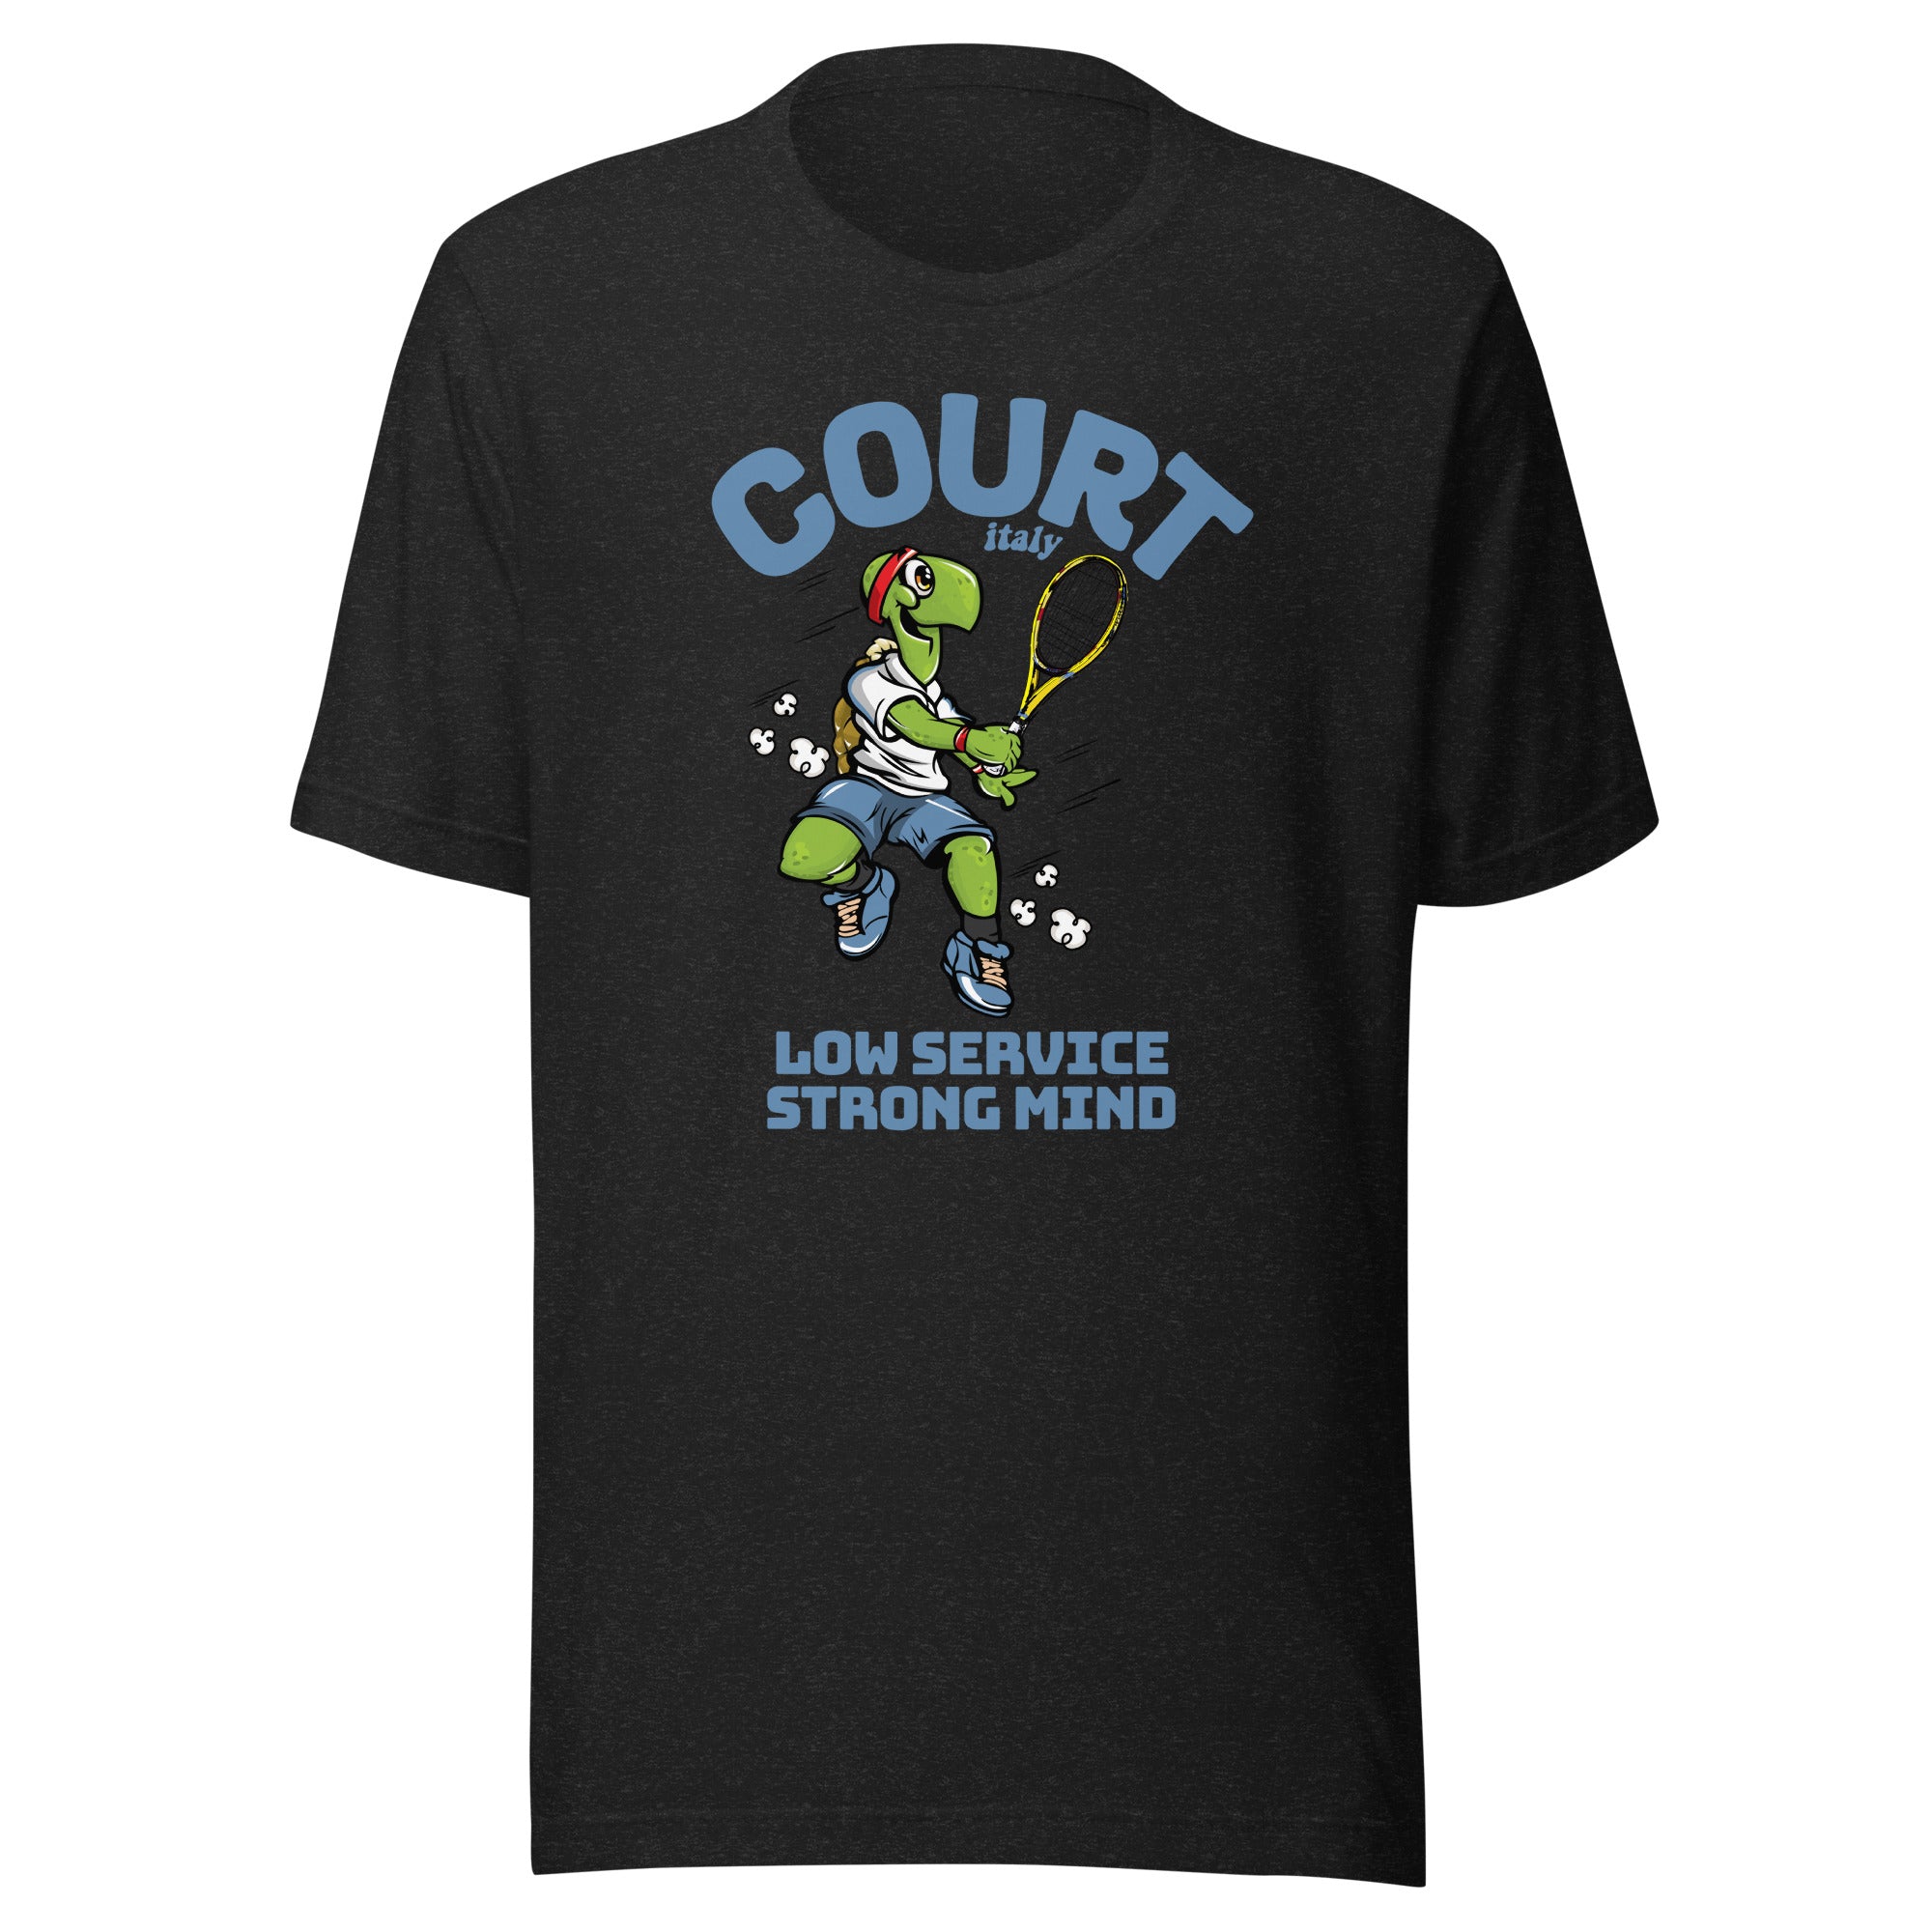 Tennis Legend - Court Turtle